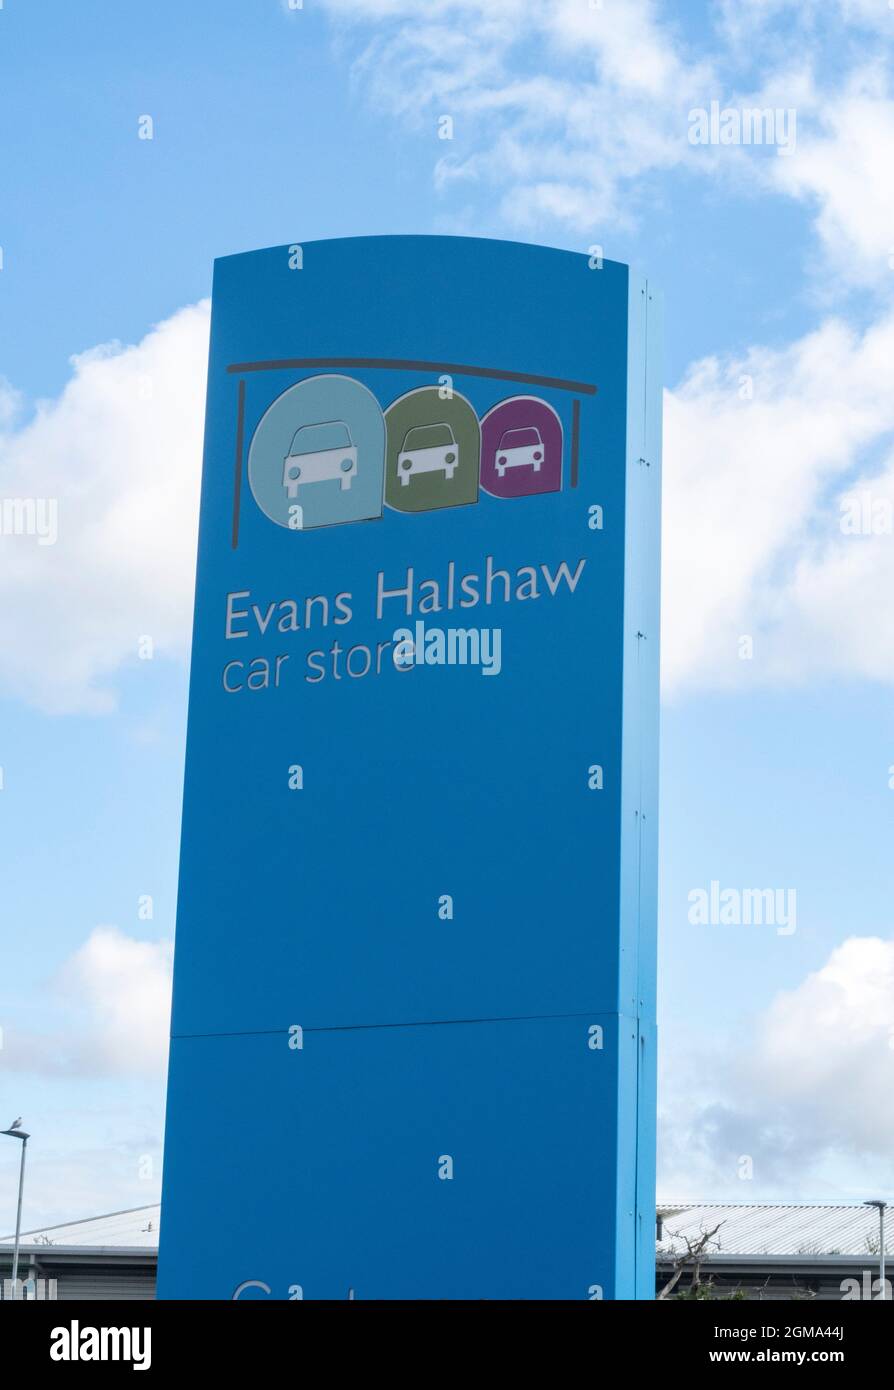 Logo et enseigne de voiture Evans Halshaw à l'extérieur de la salle d'exposition du concessionnaire automobile, Exeter. Magasin de voitures, Banque D'Images